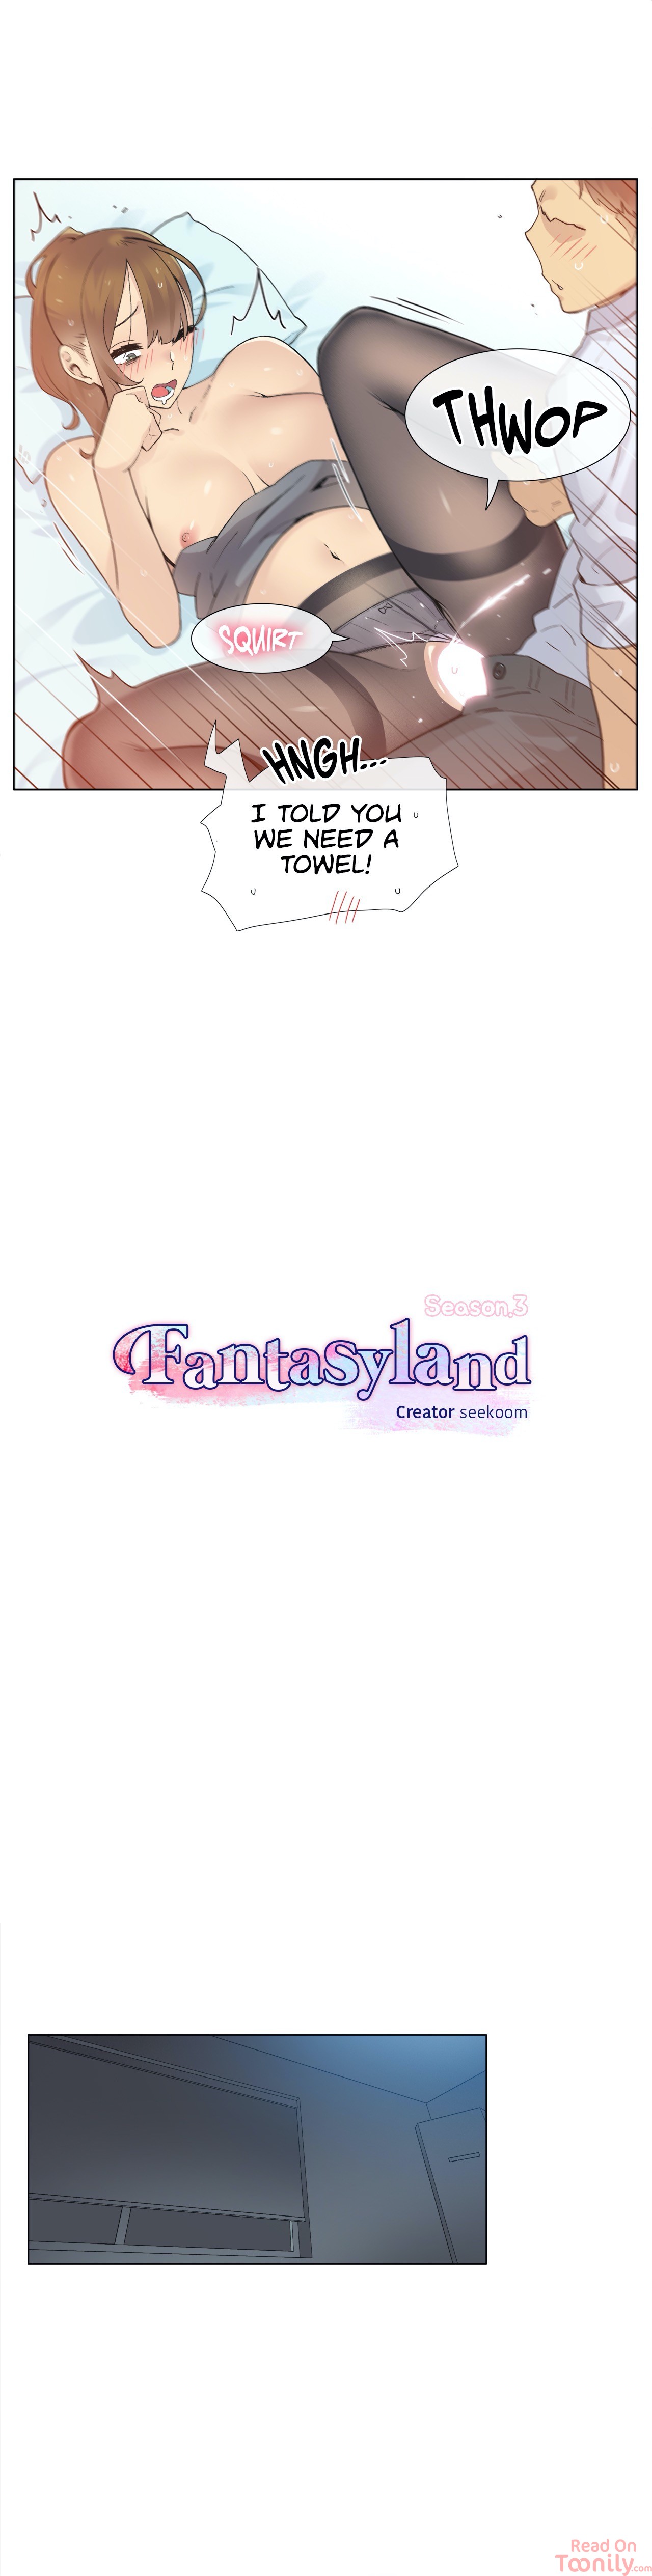 Fantasyland image